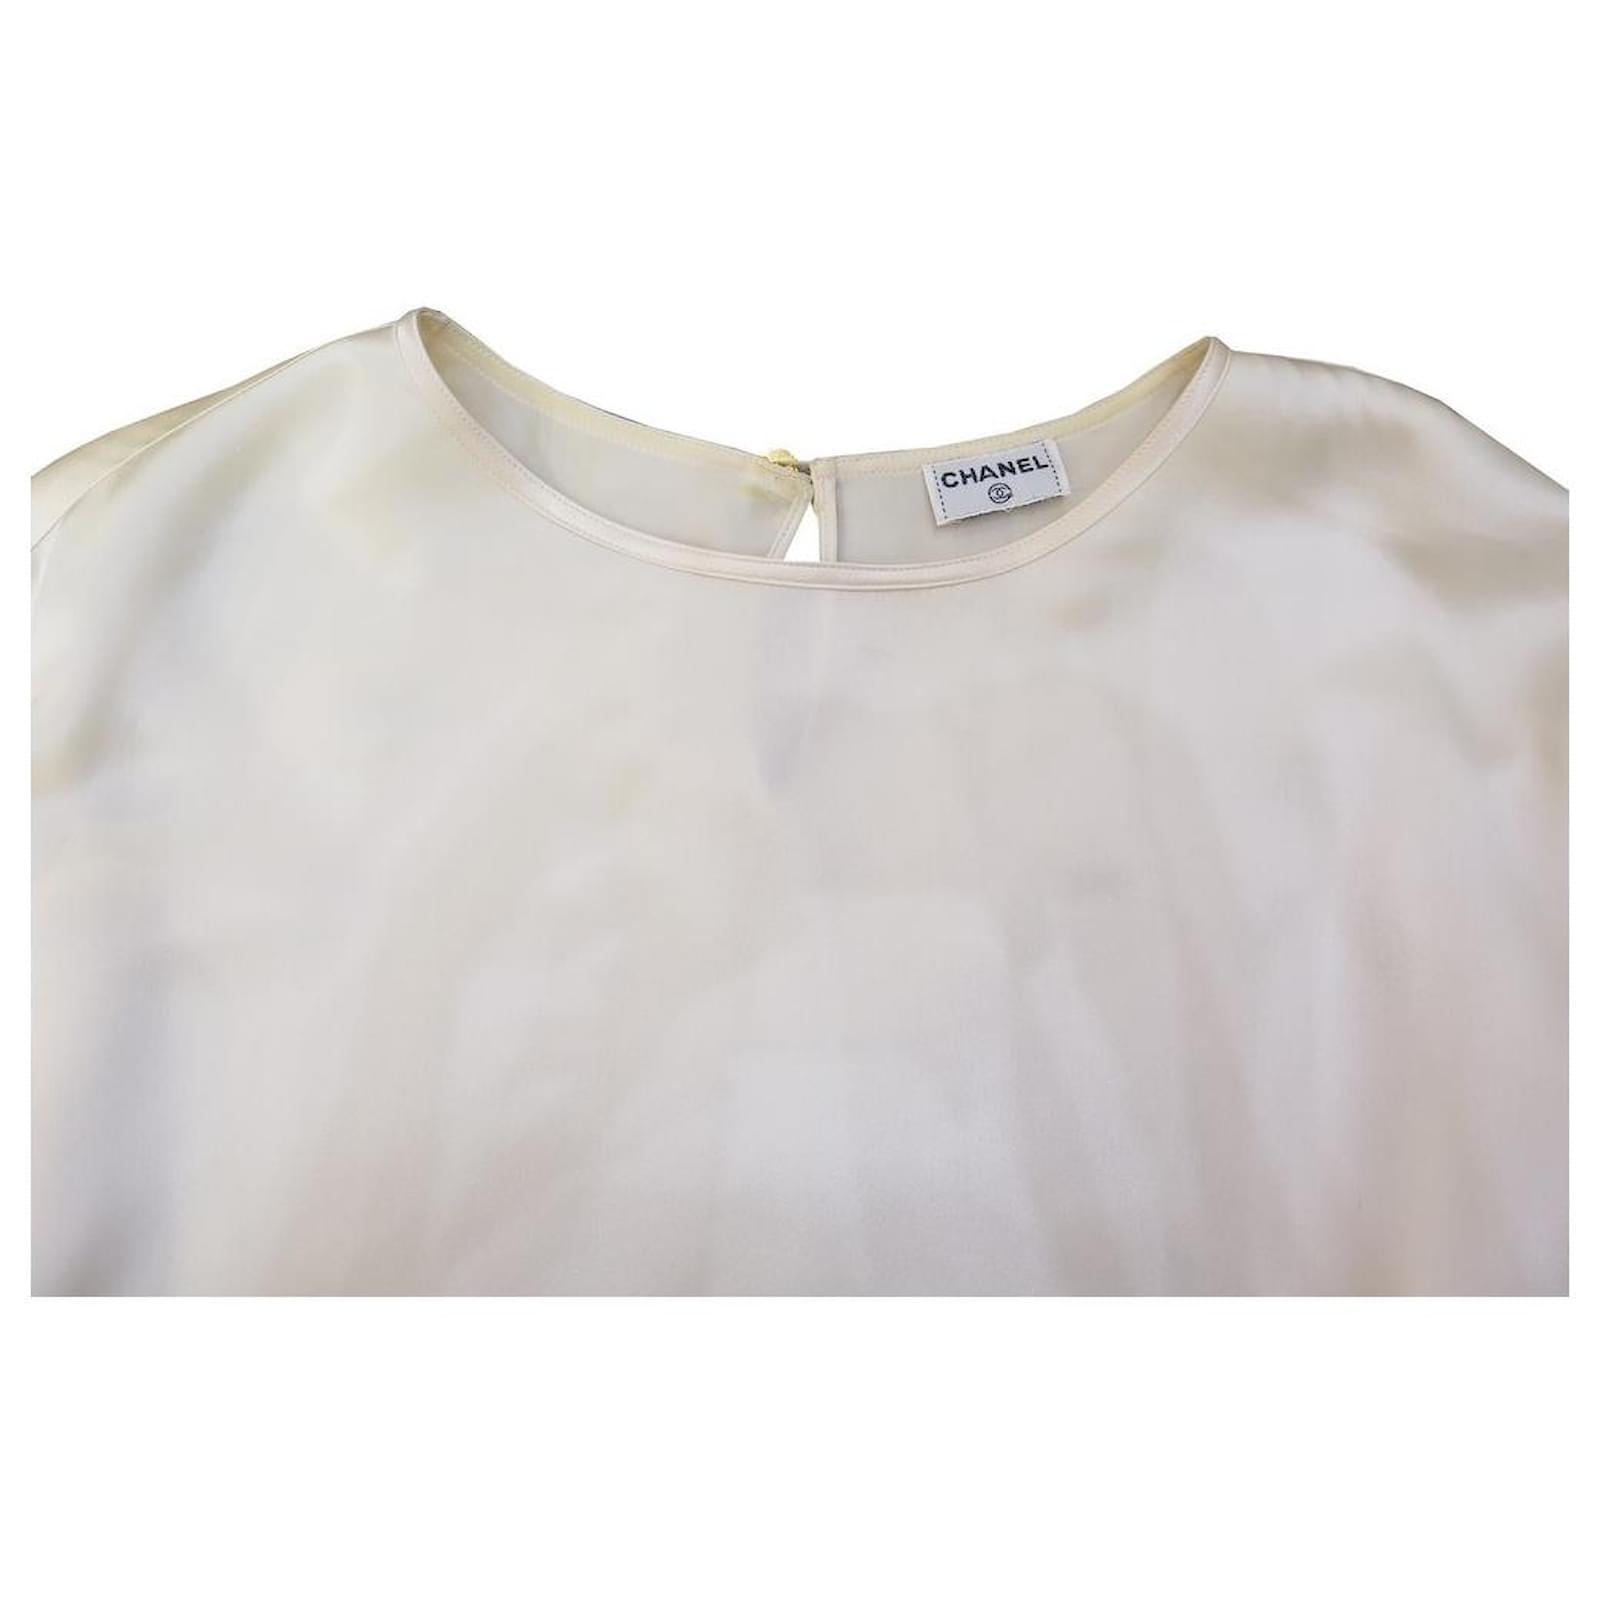 chanel white blouse xl